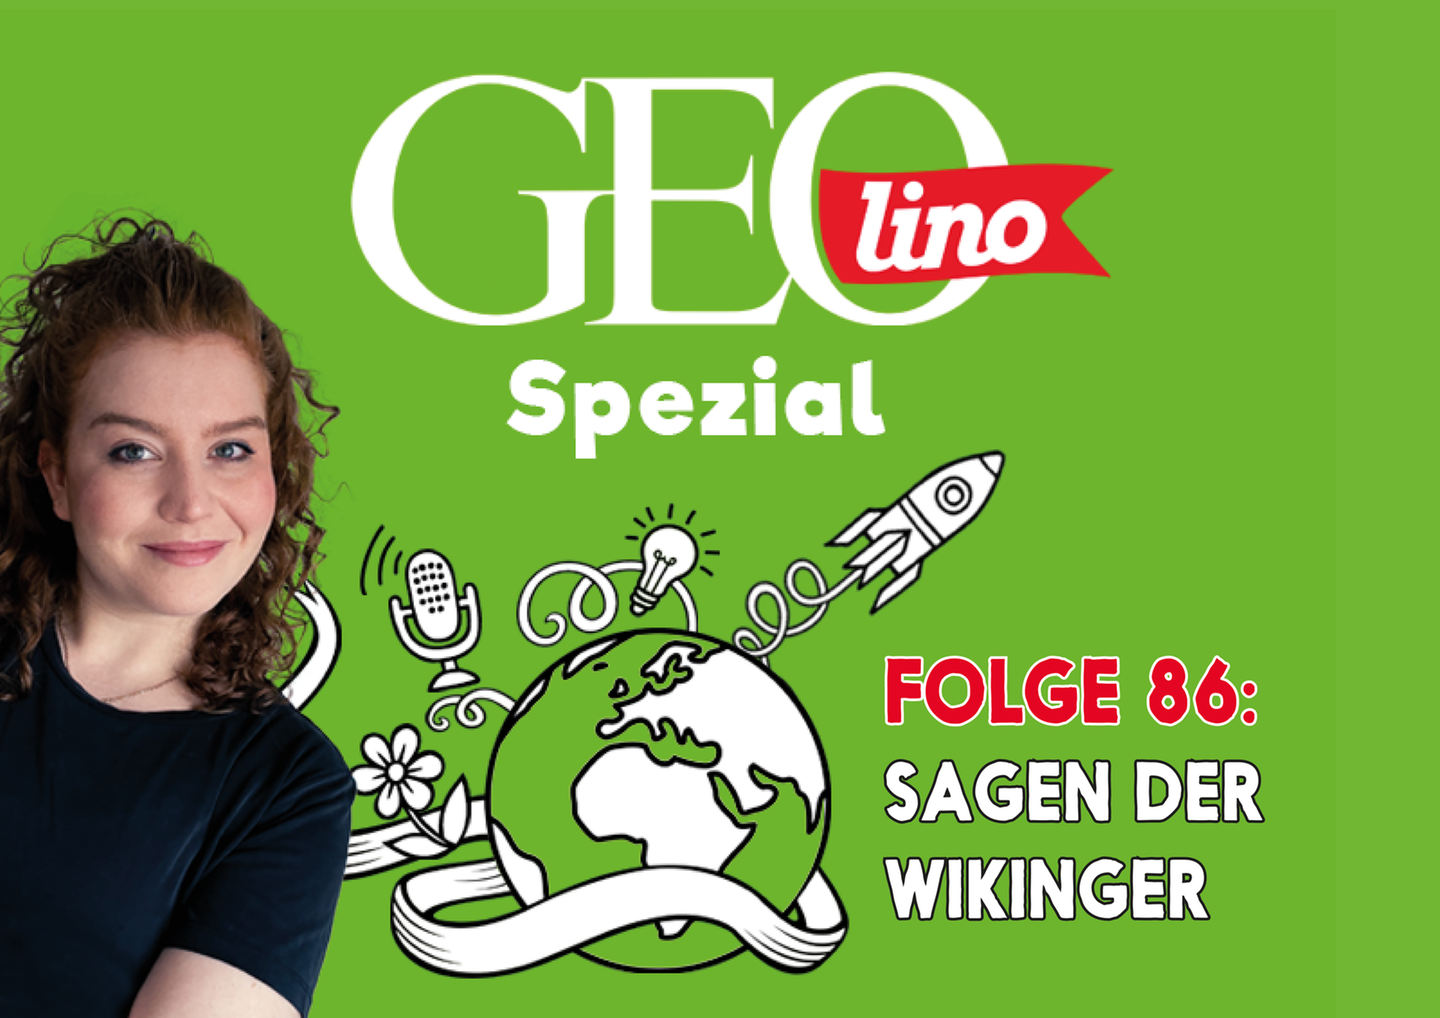 In Folge 86 unseres GEOlino-Podcasts geht es um die Sagen der Wikinger